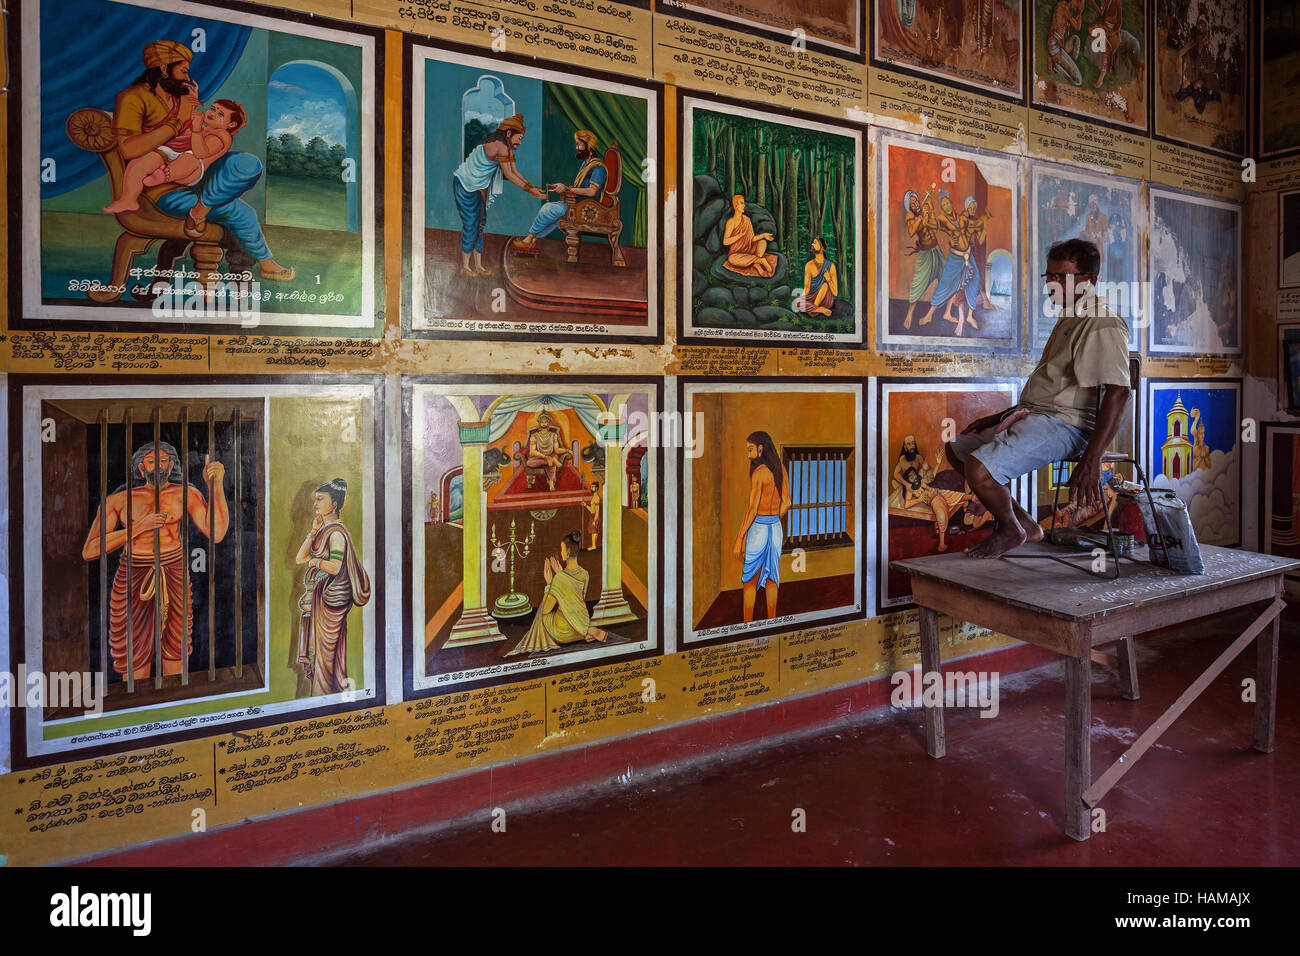 La restauration des peintures murales, homme cinghalais des scènes de la vie de Bouddha, Temple Weherahena, Matara, Province du Sud, Sri Lanka Banque D'Images